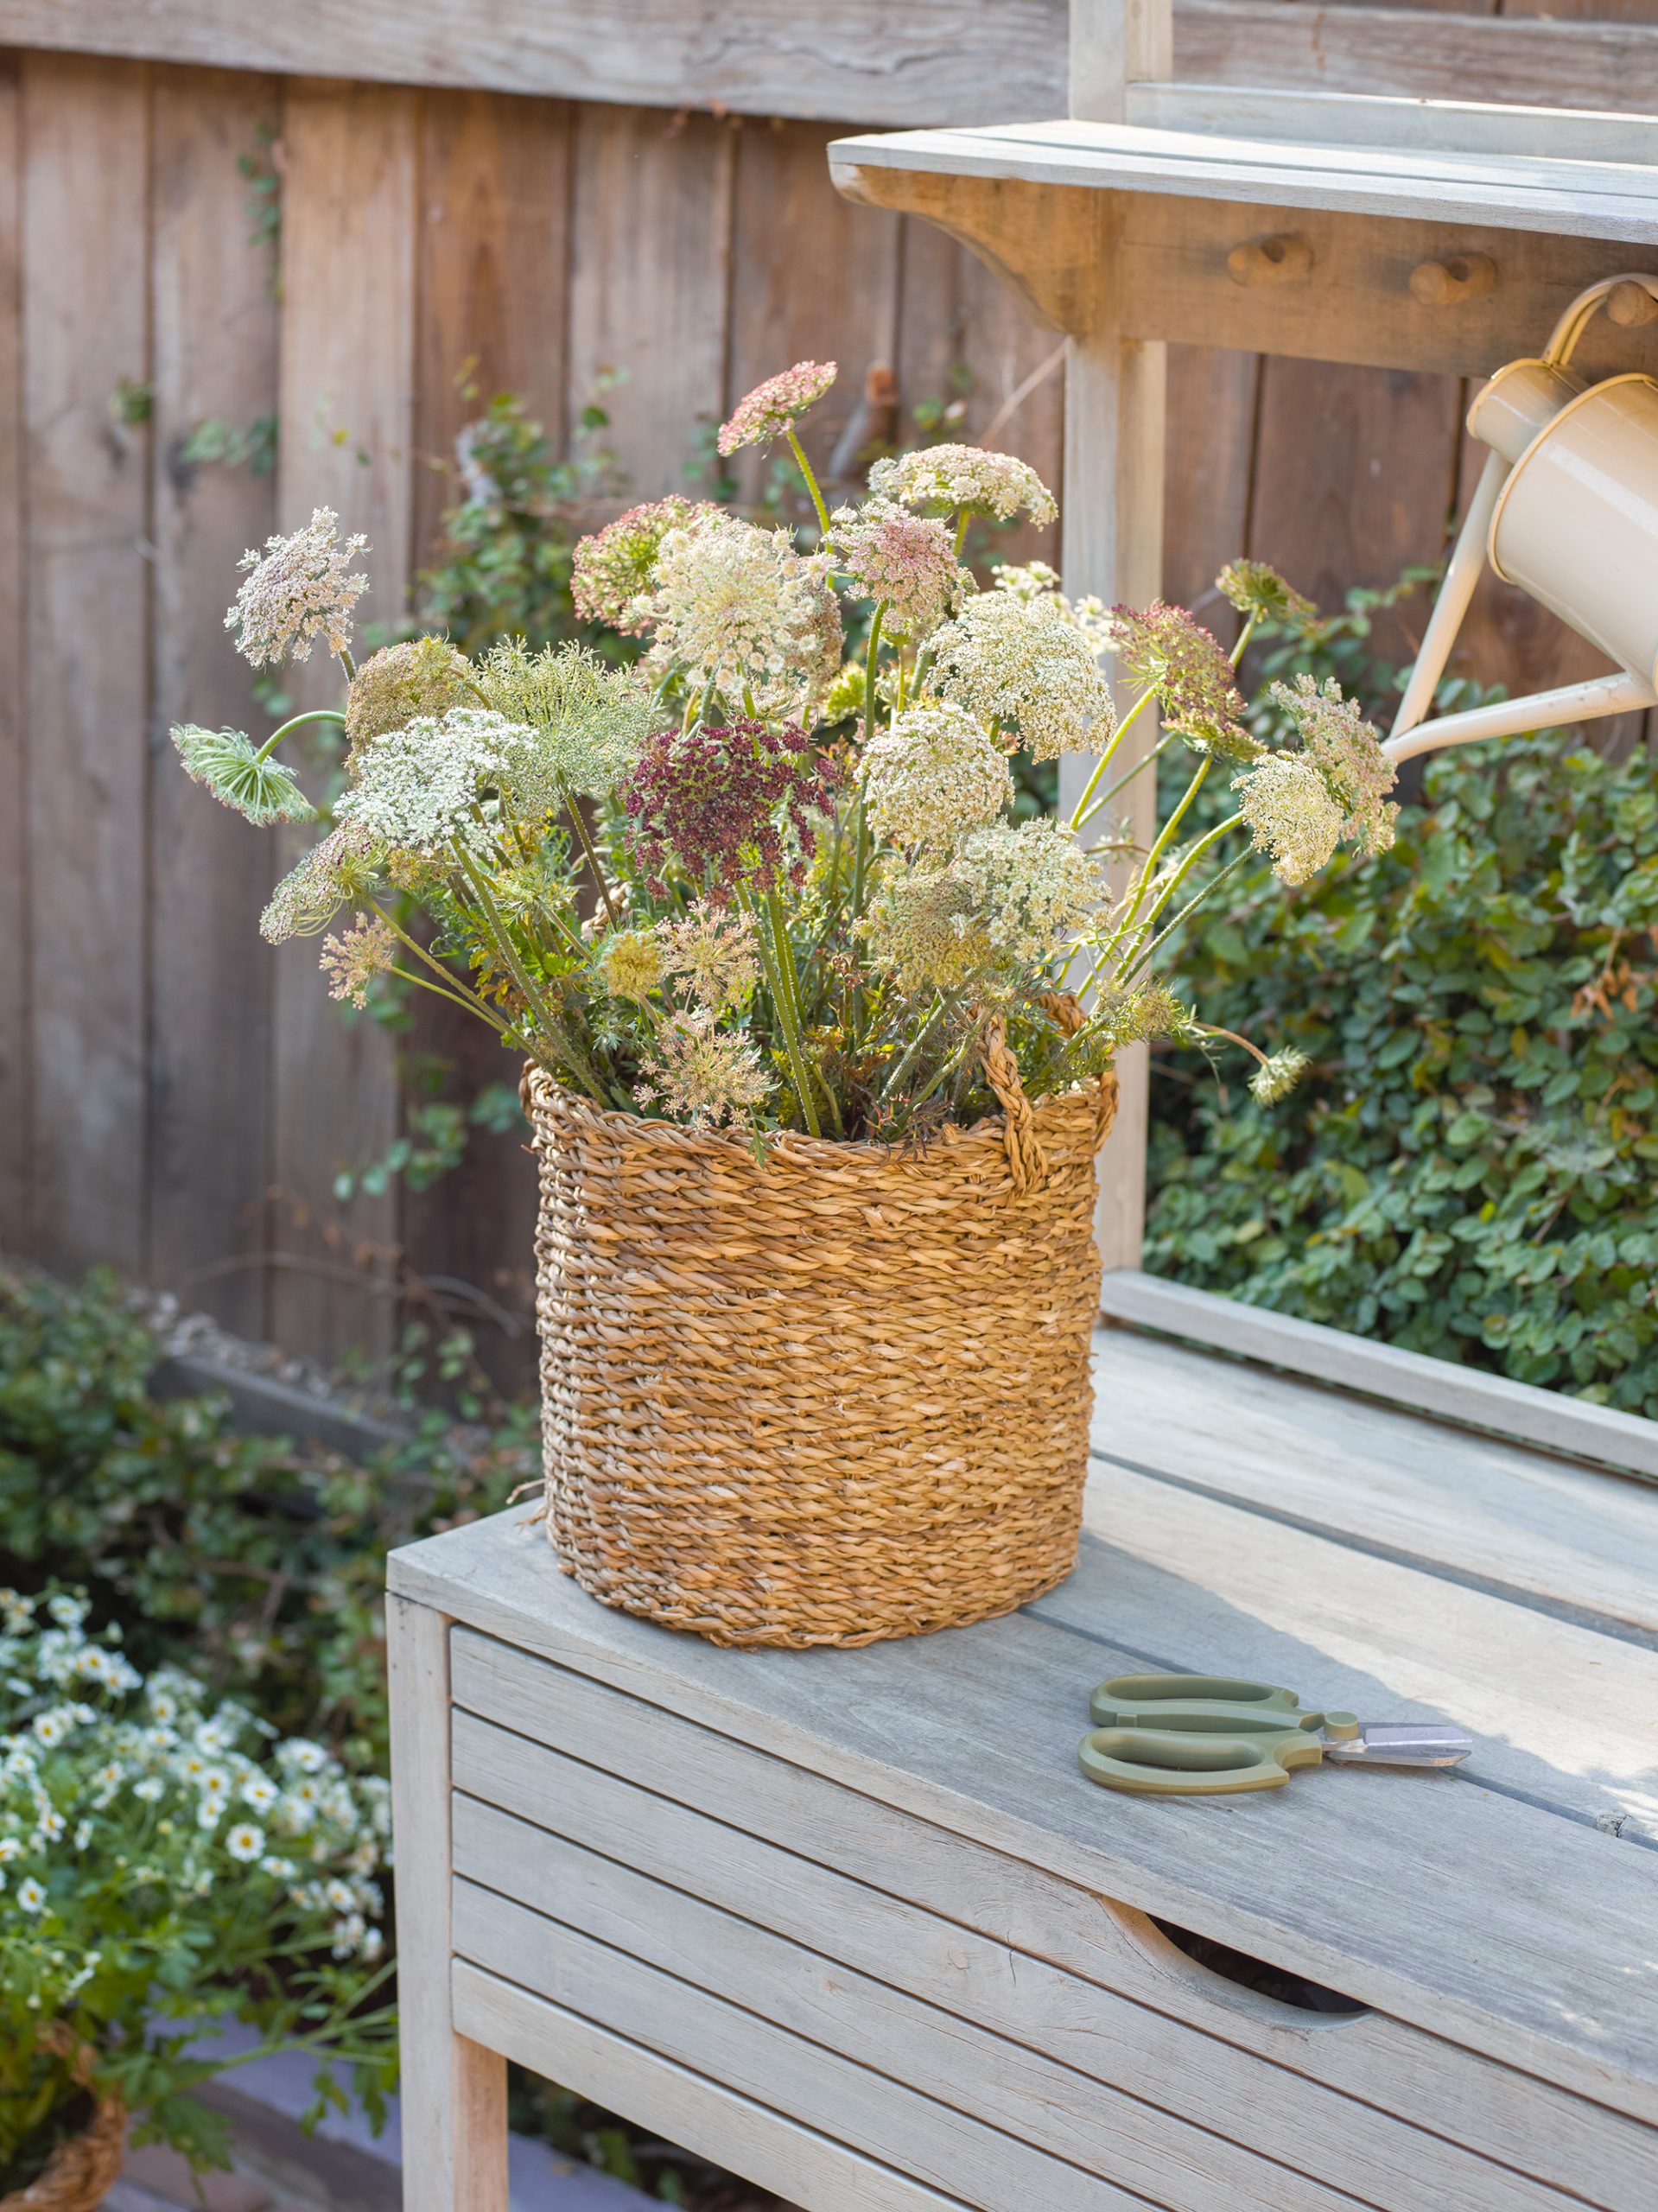 Garden To Vase: The Best Tips For Harvesting, Foraging & Designing Floral Arrangements